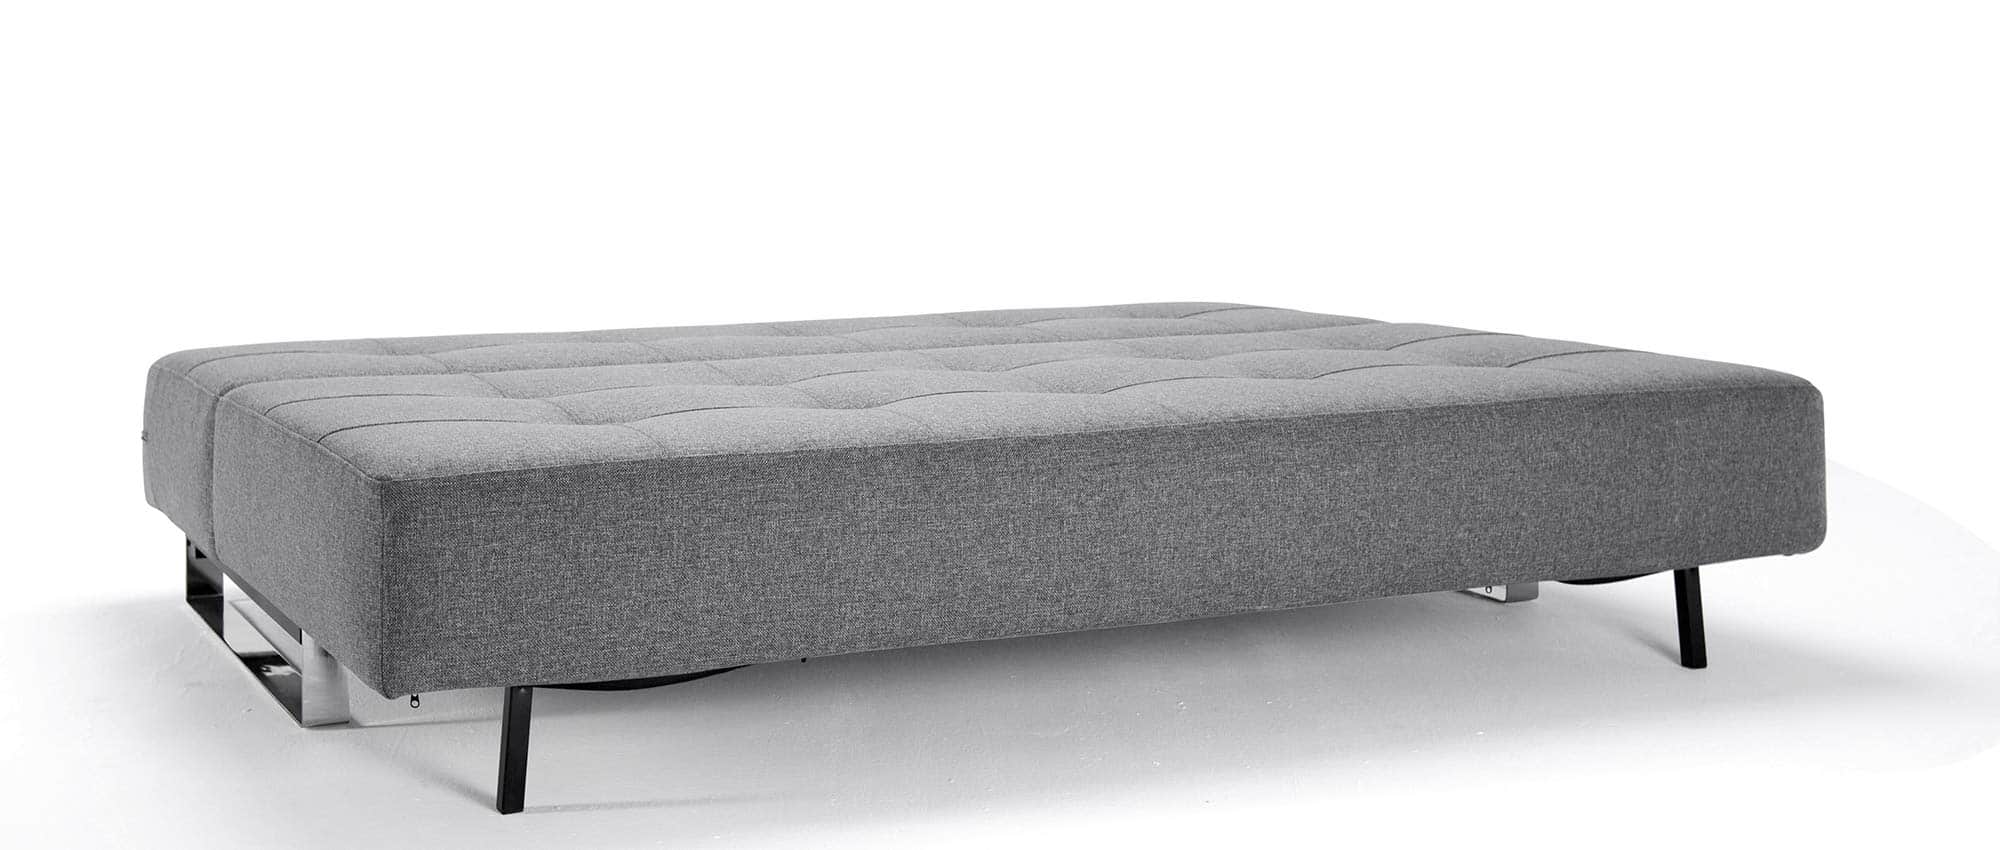 Schlafsofa ohne Armlehnen, Lounge Sofa von Innovation mit Chromkufen - 155x200 cm